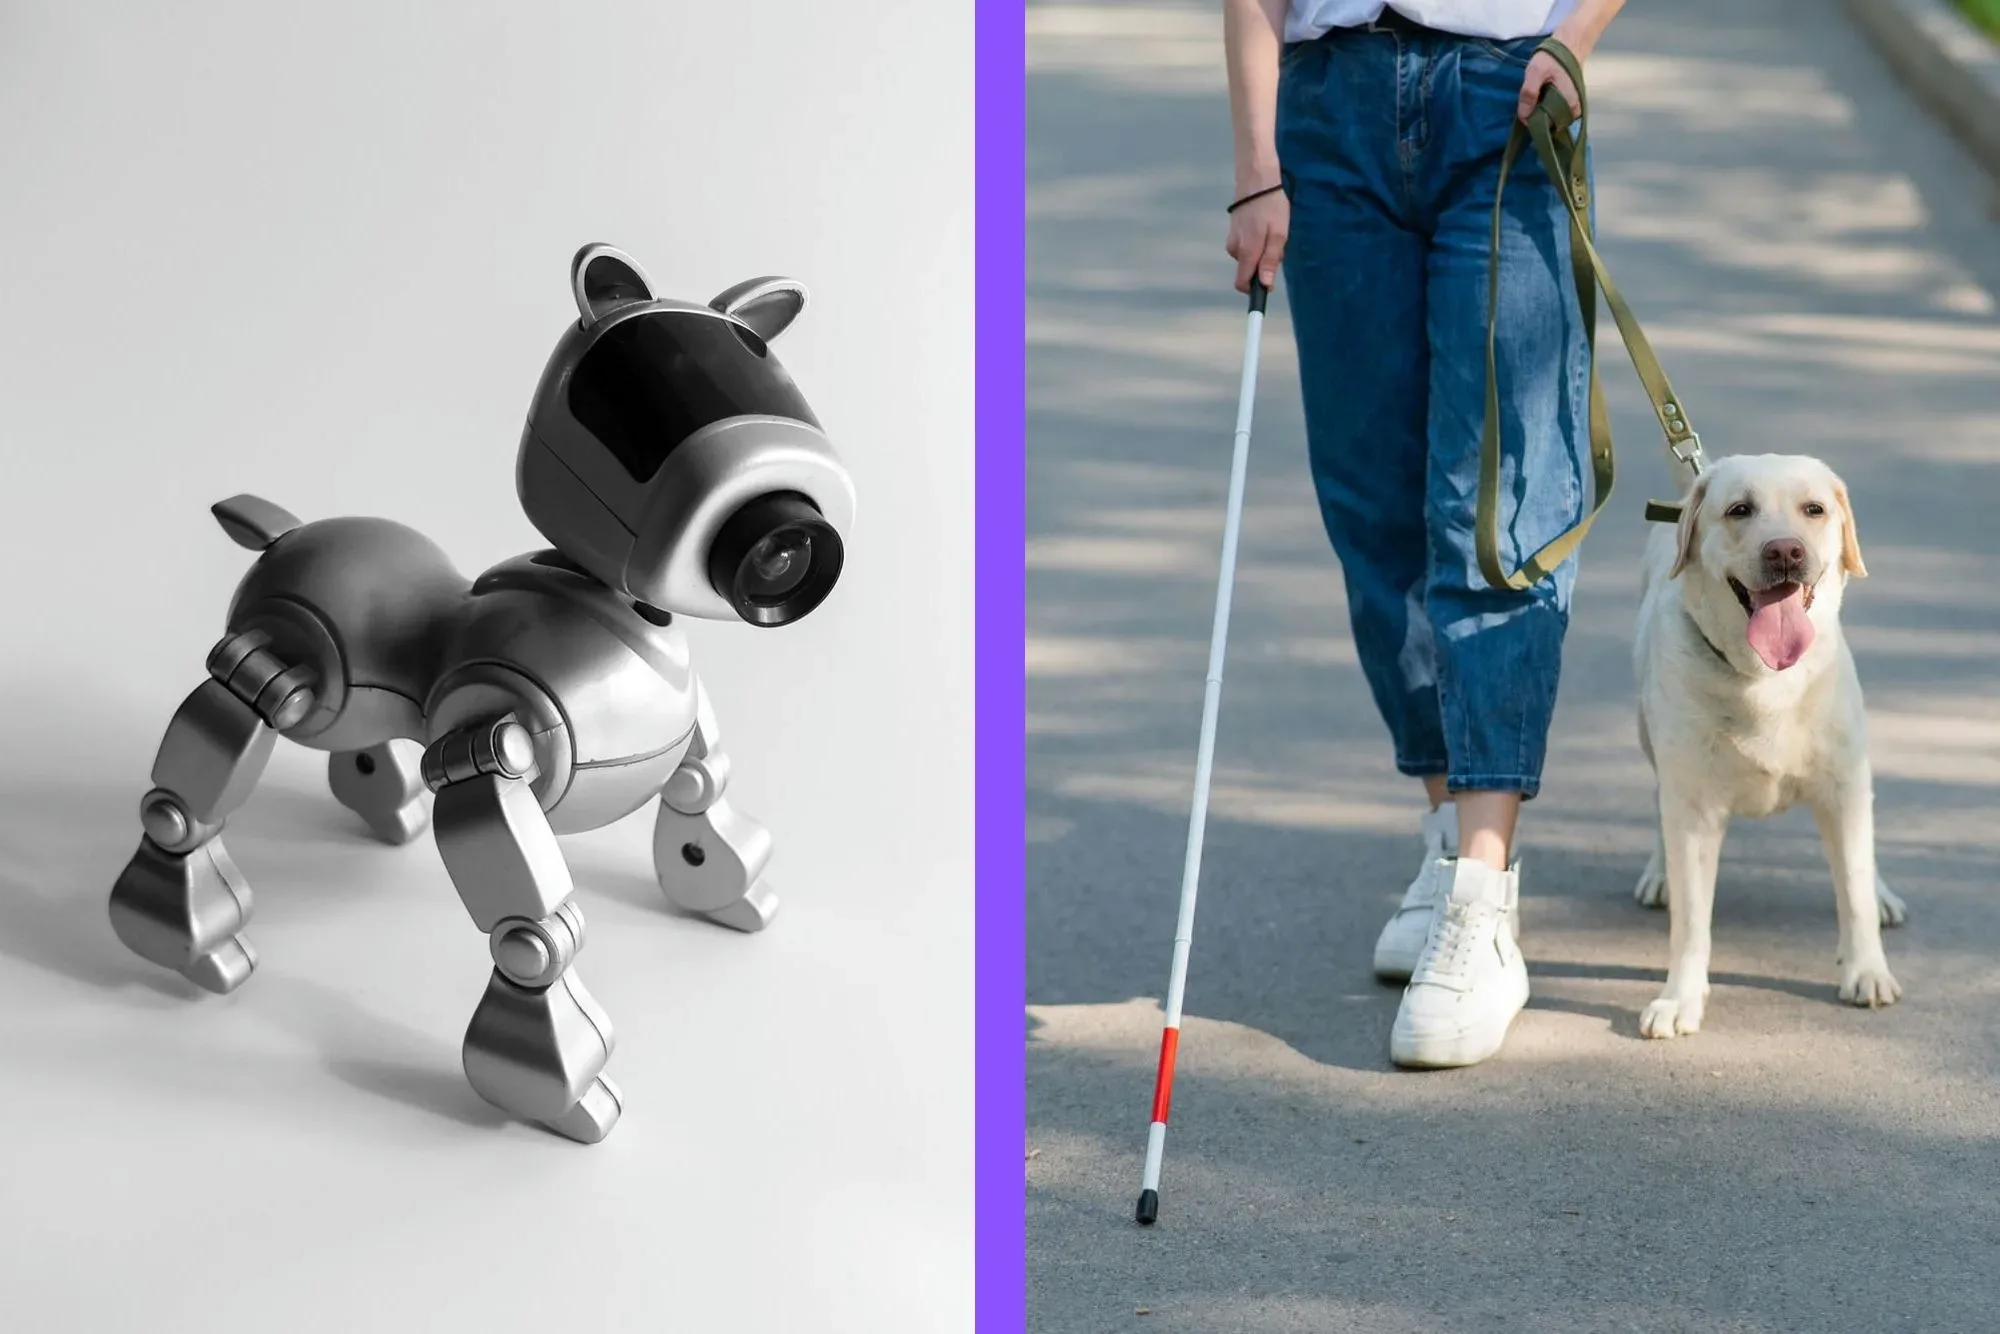 roboticky pes vodiaci pes jpg webp